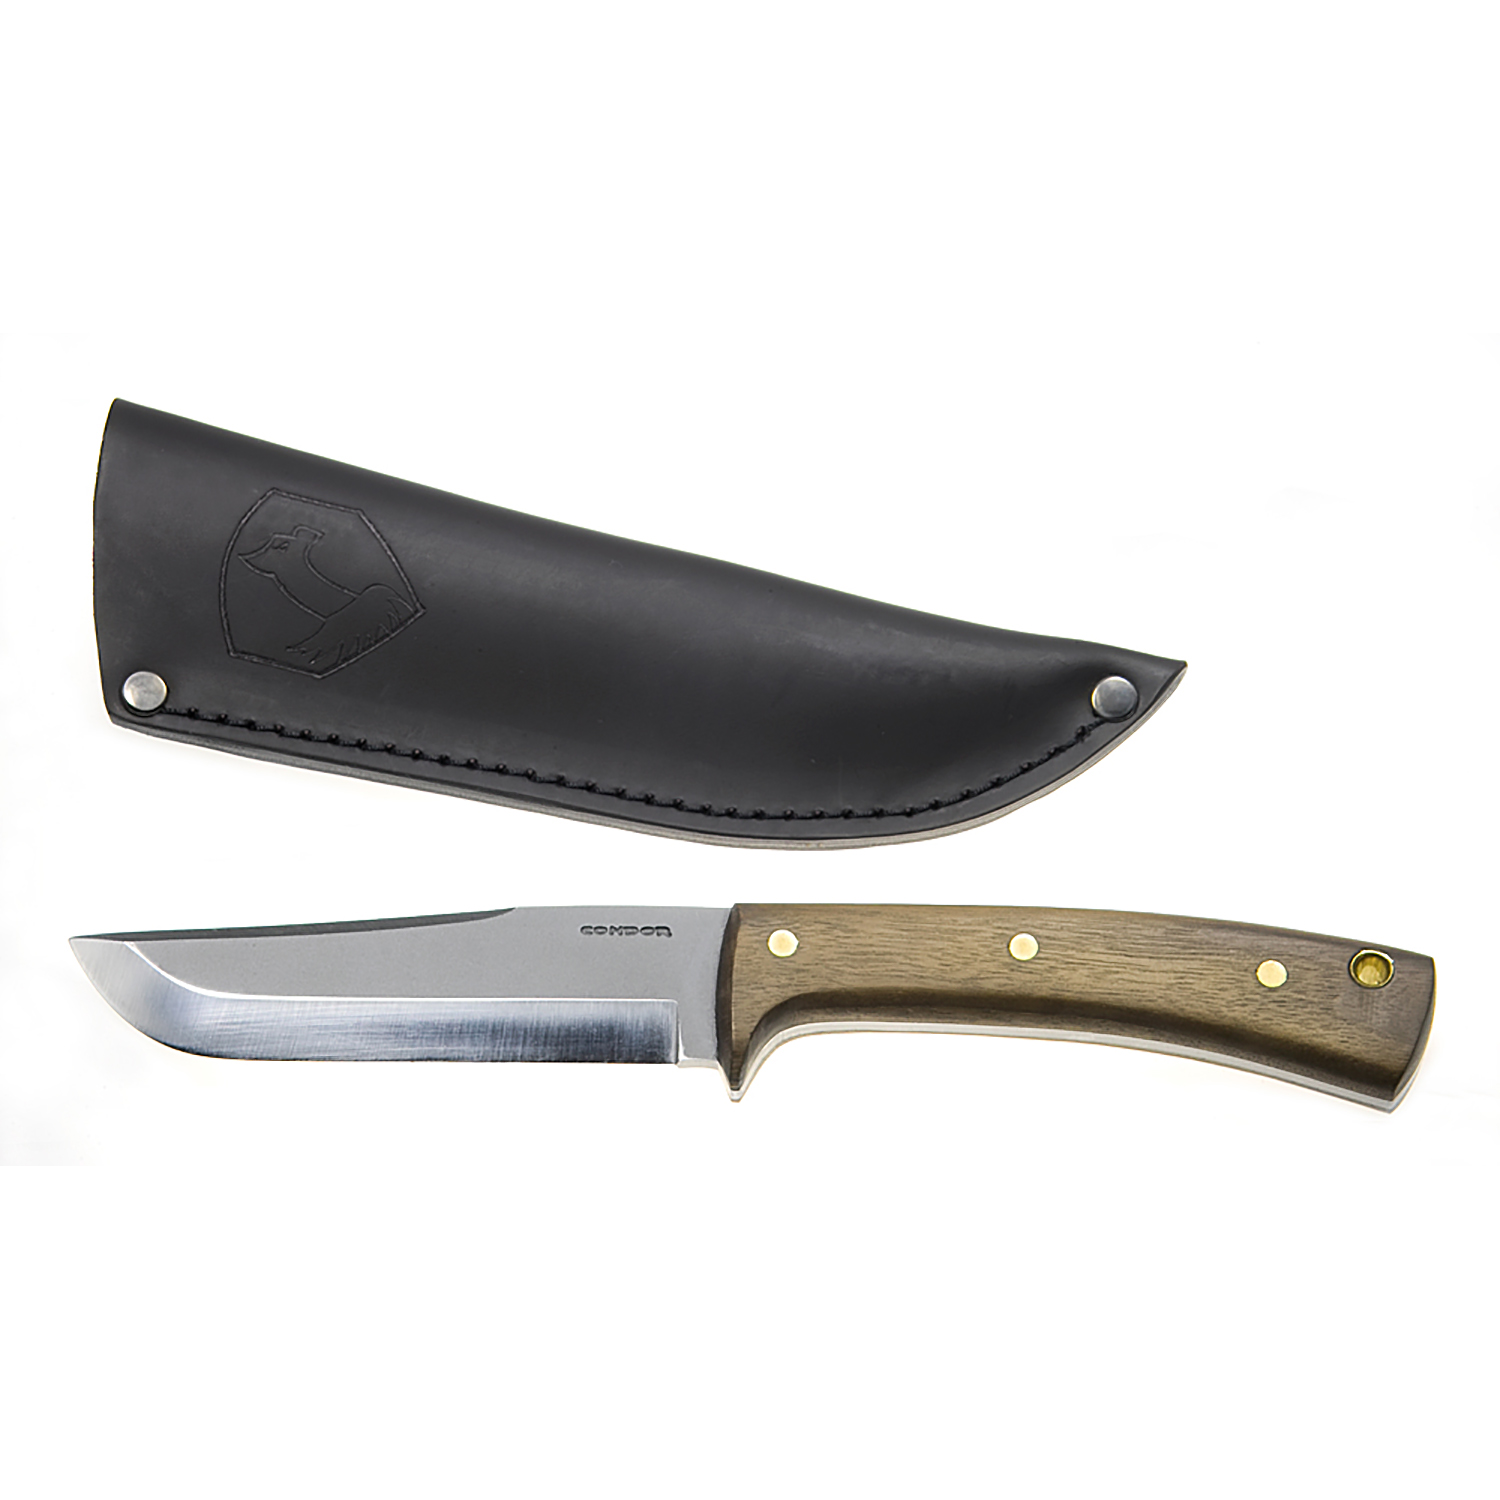 Condor Tool & Knife Condor Stratos Fixed Plain Edge Knife w/Leather Sheath 5 In